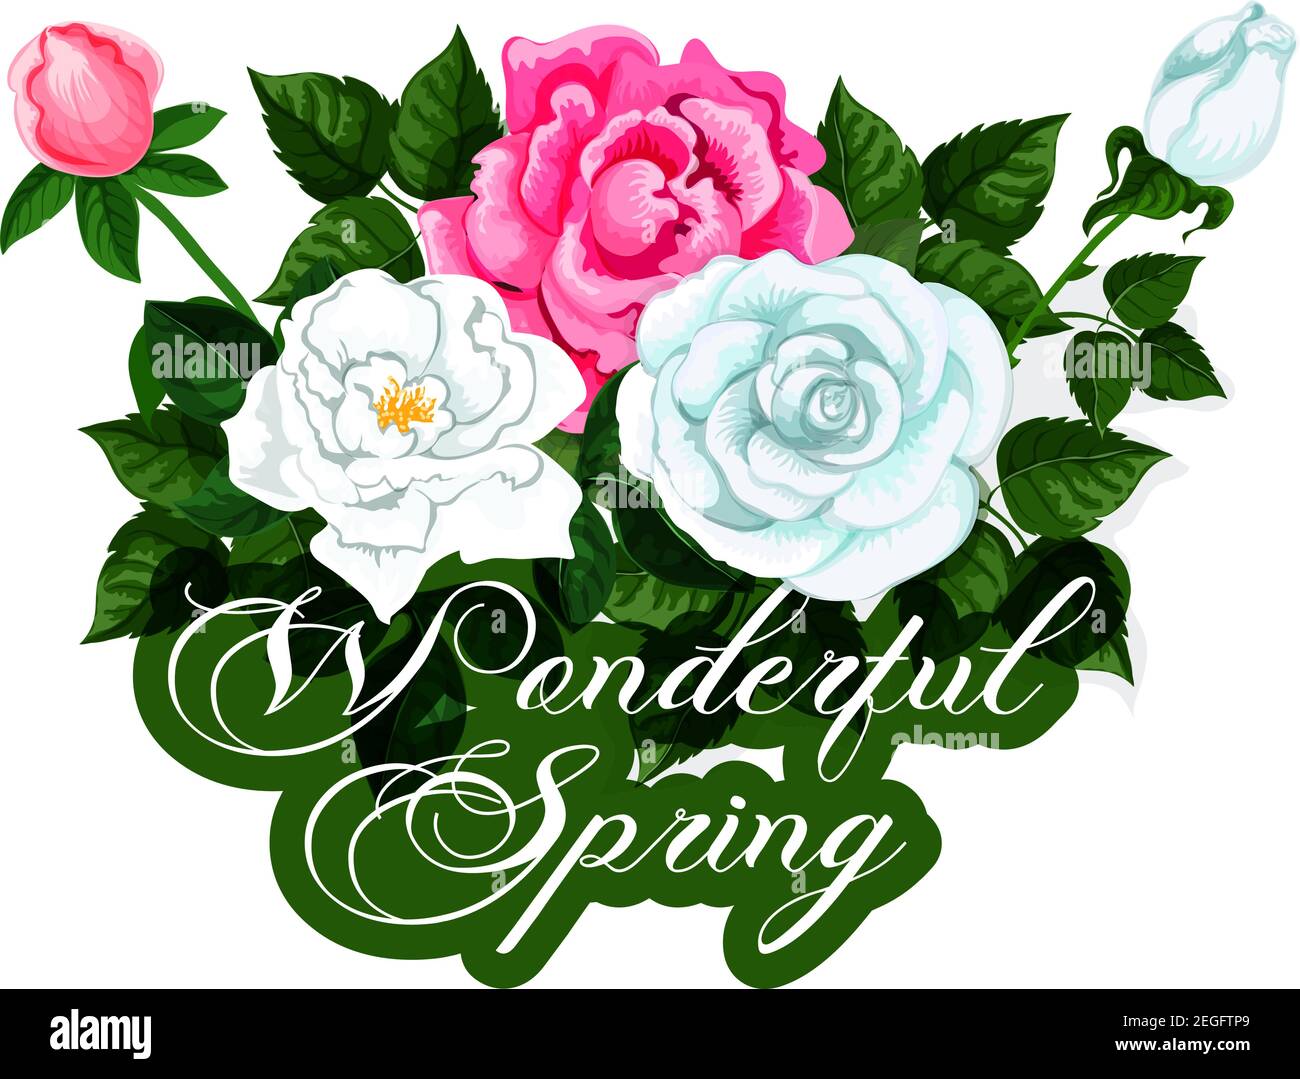 Frühlingsrosen Büschel Symbol für Frühling saisonalen Urlaub oder Grußkarte  Design. Vektor isoliert rot und weiß blühende Rose Bouquet von Frühling  floral Stock-Vektorgrafik - Alamy